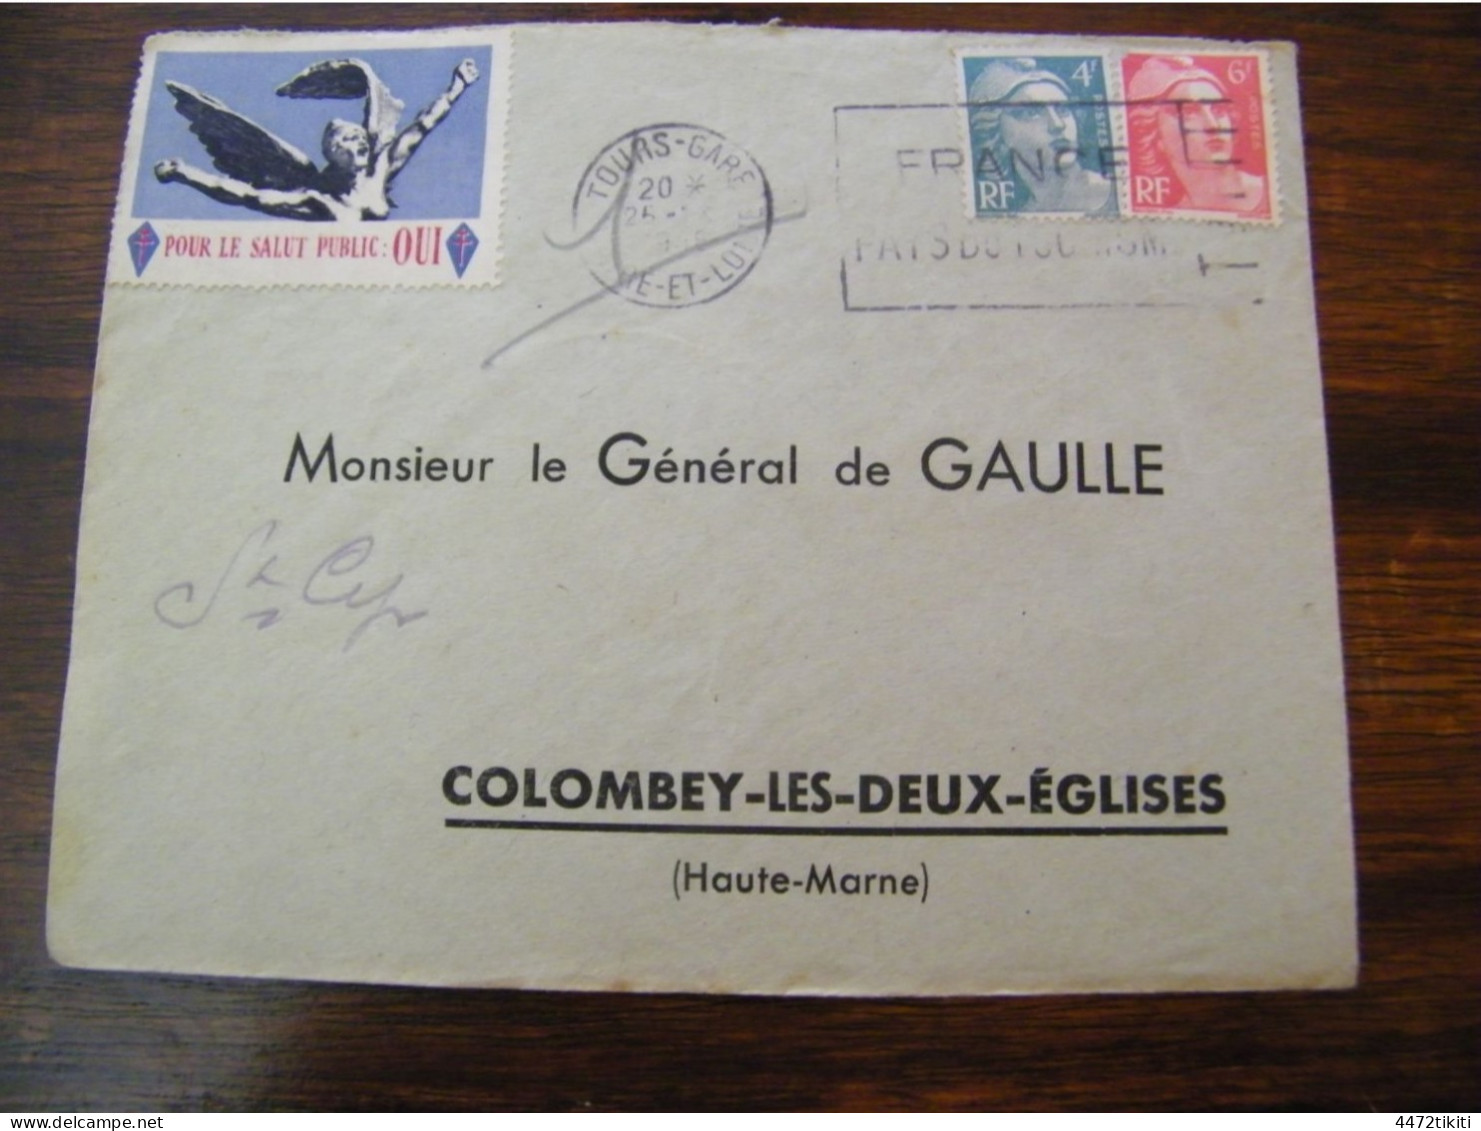 Lettre Général Charles De Gaulle à Colombey Les Deux Eglises  - Vignette Pour Le Salut Public : Oui - 1948 - SUP (HL 93) - De Gaulle (Général)